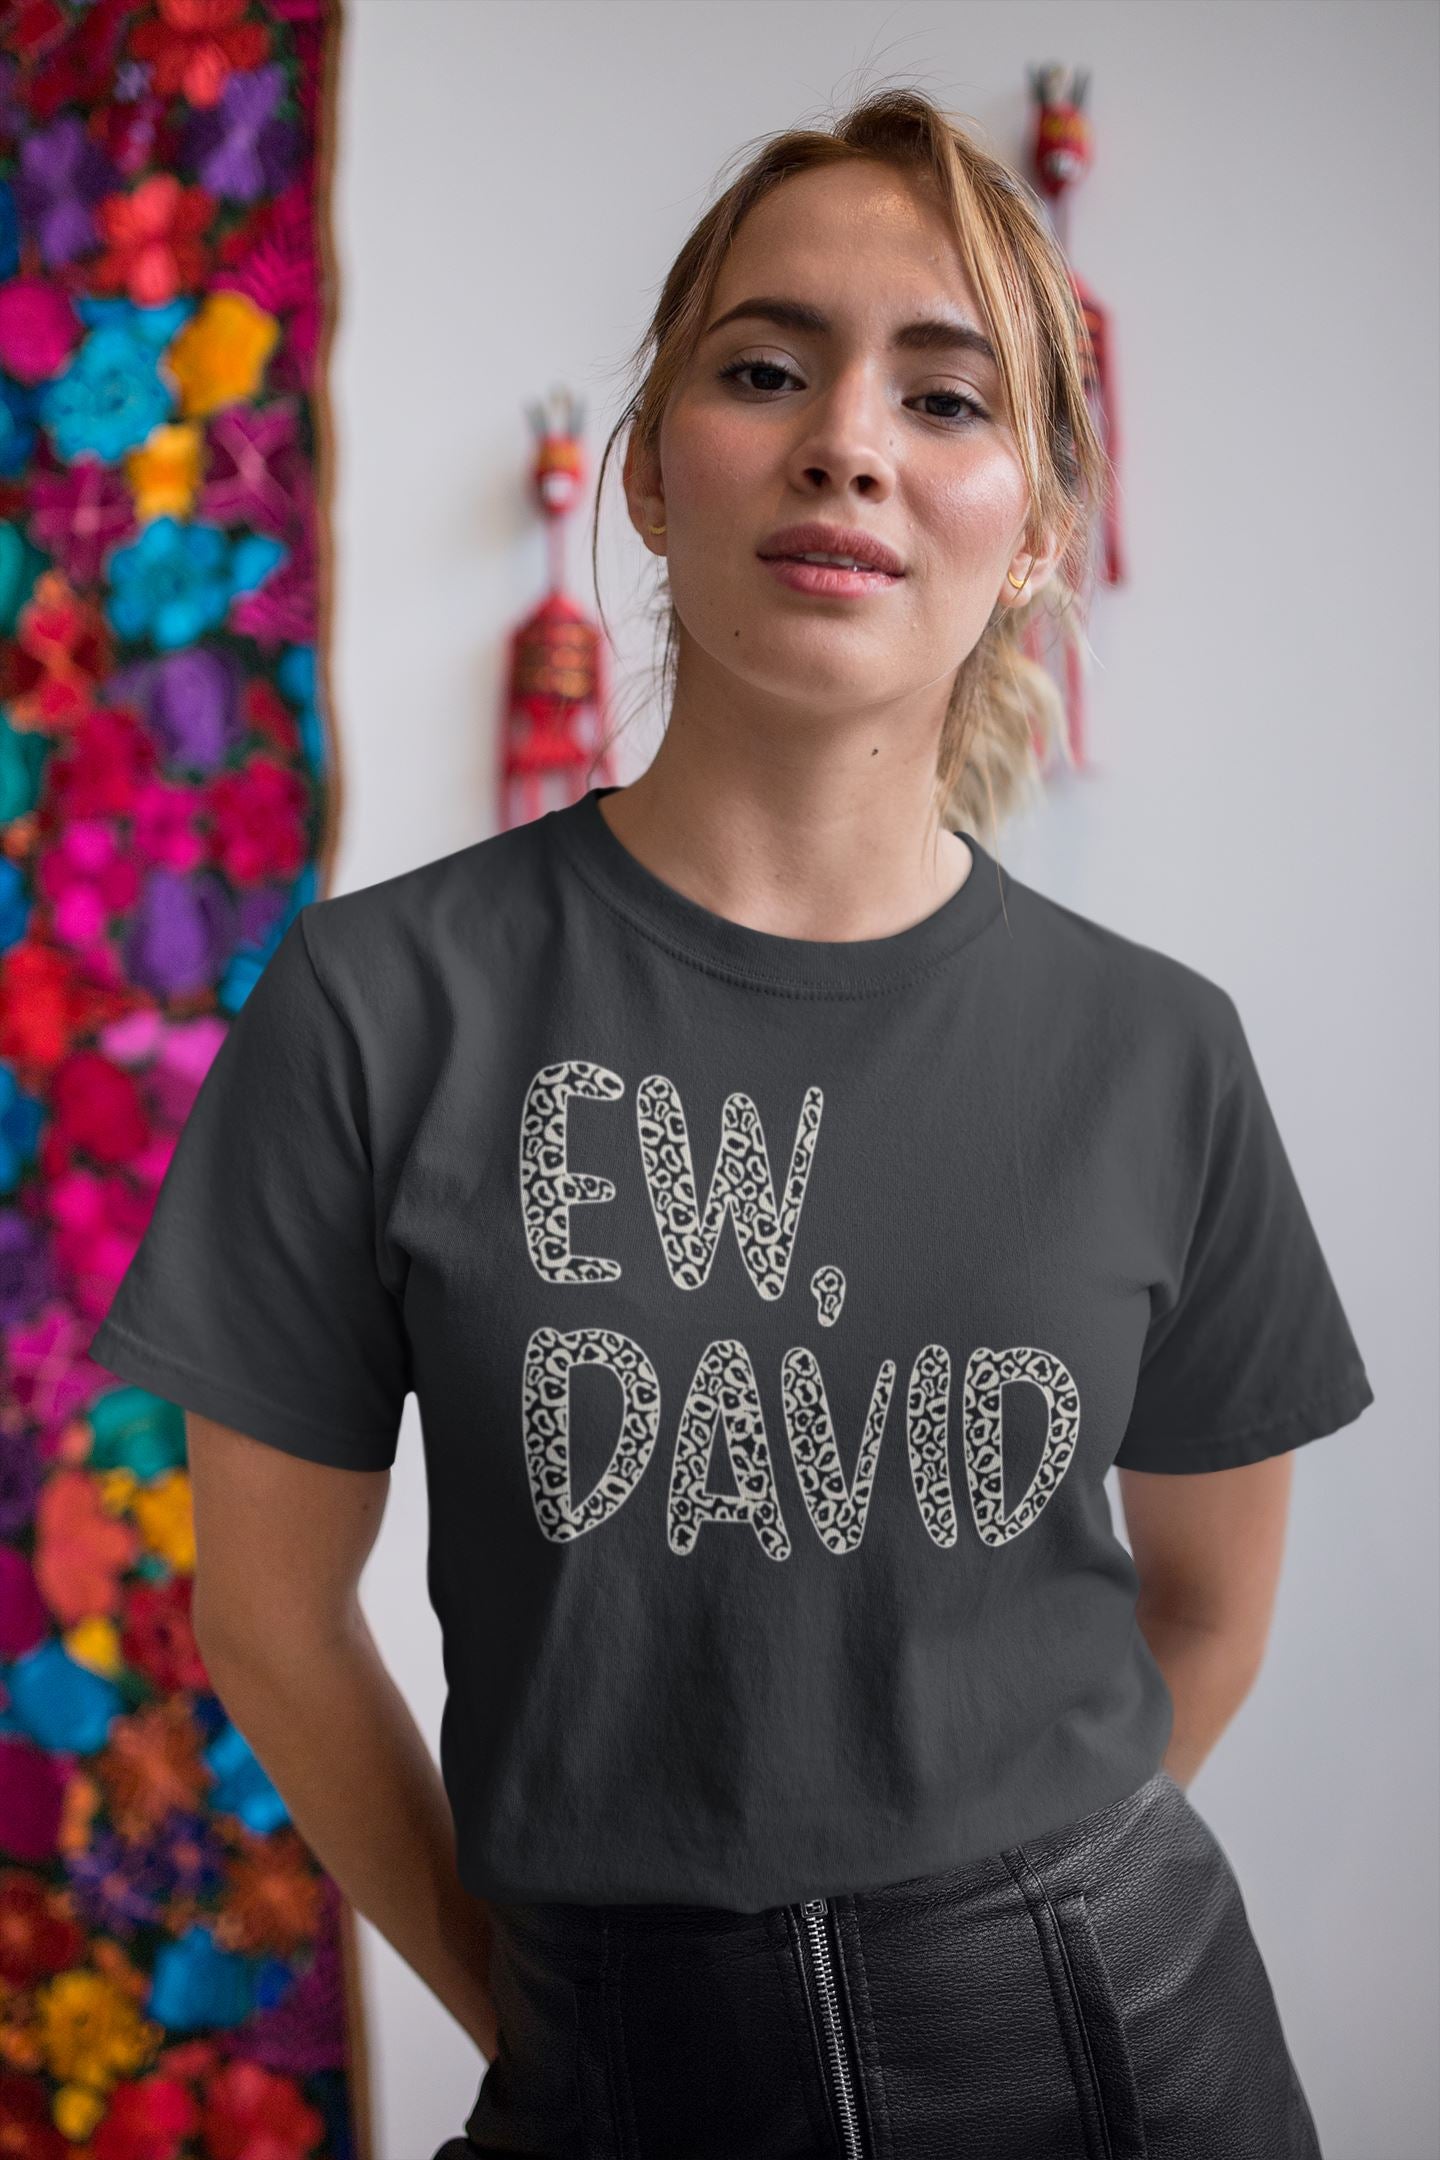 Ew David Official Schitt's Creek T Shirt for Men and Women freeshipping - Catch My Drift India